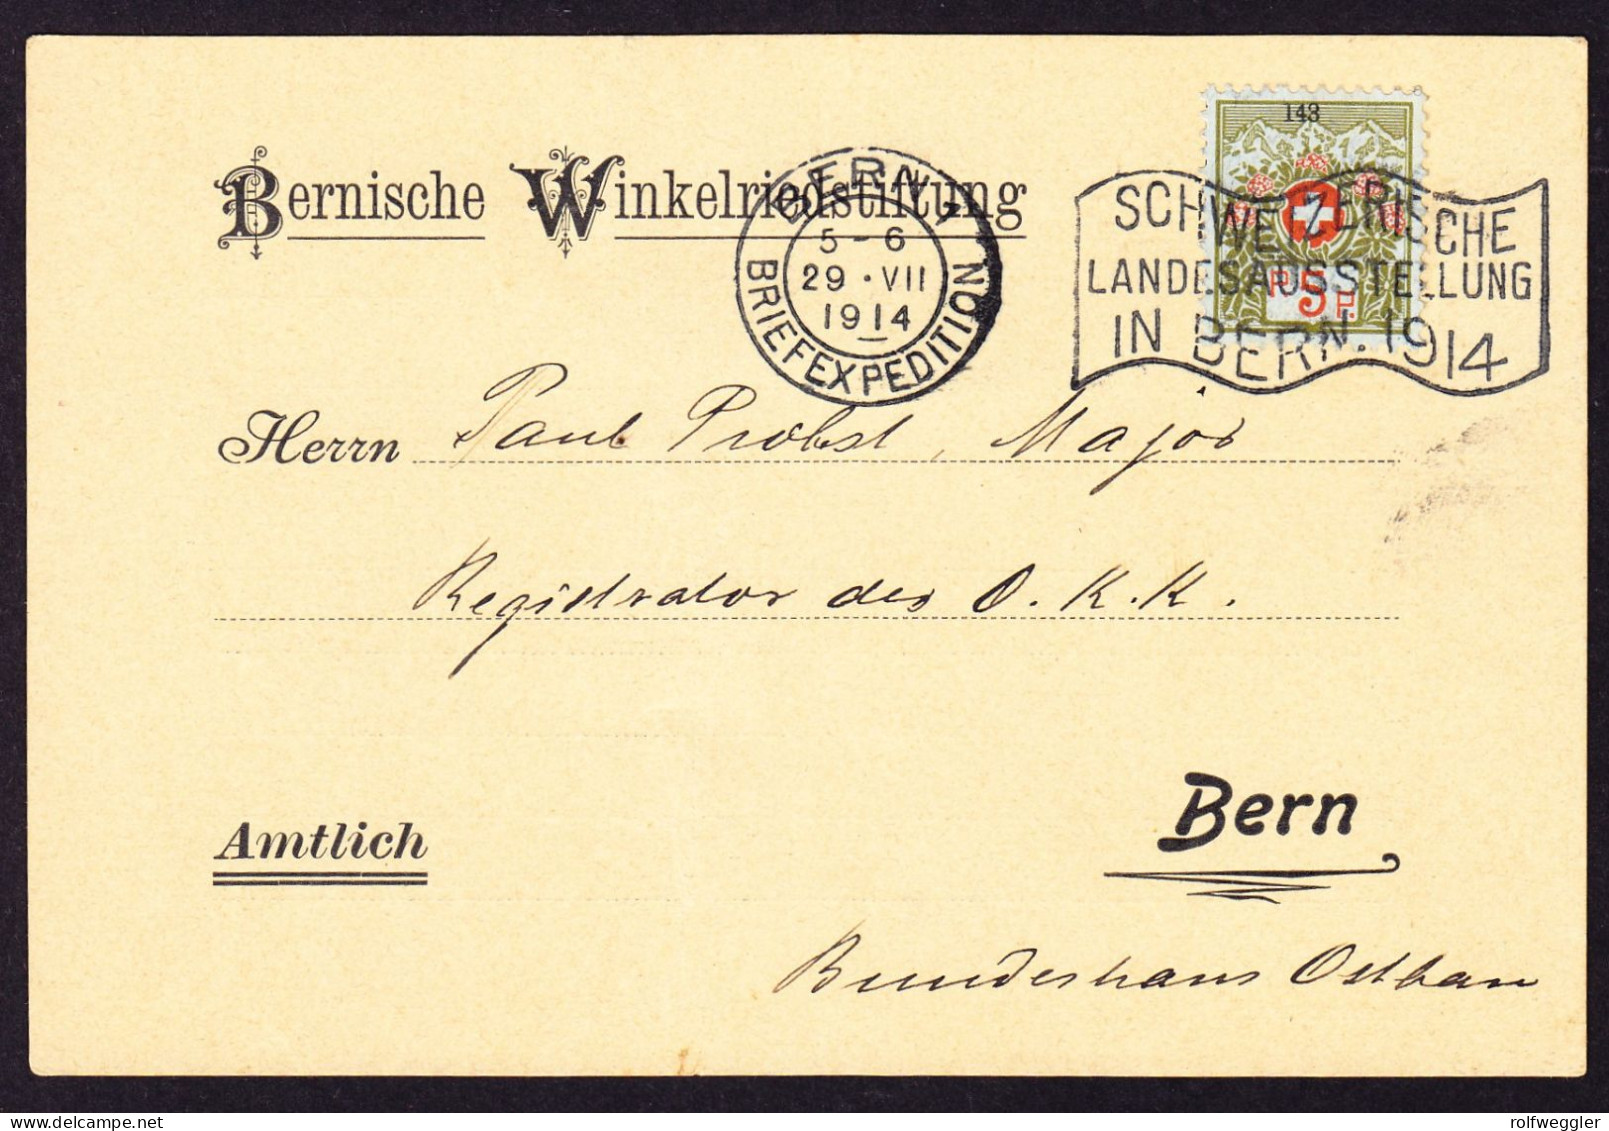 1914 5 Rp Marke Mit Kleiner Nummer Mit Landesausstellung Bern Stempel Auf Karte: Bernische Winkelriedstiftung - Franchise